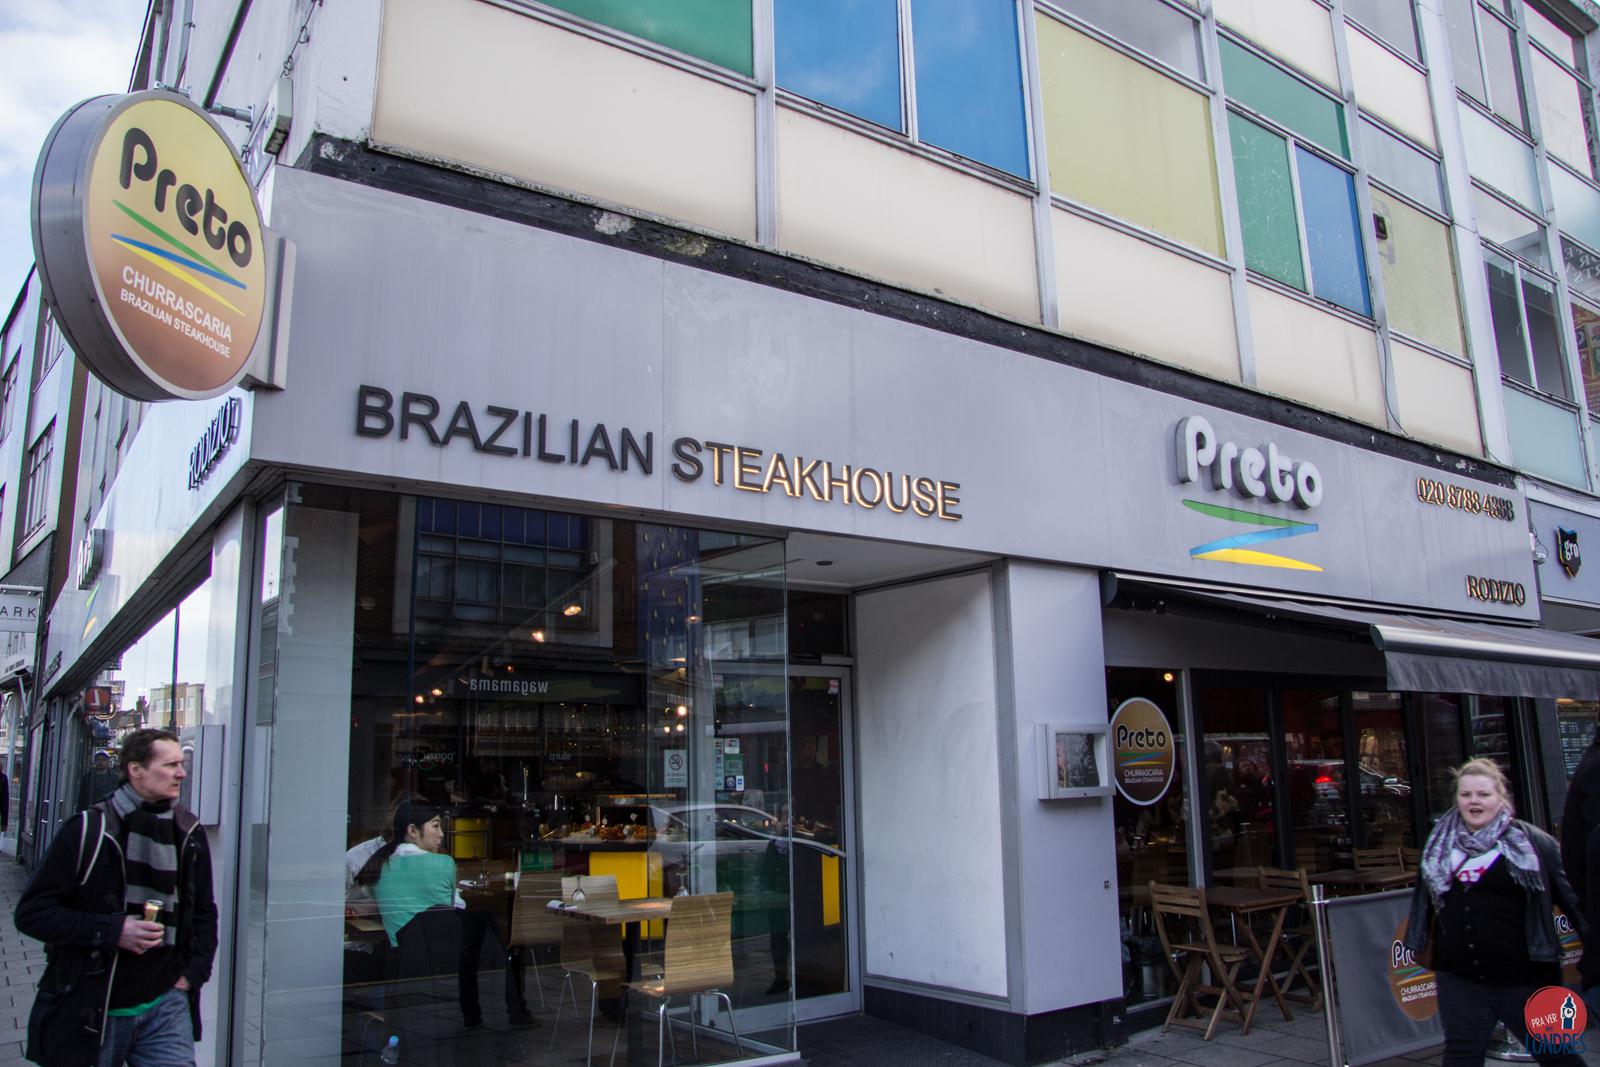 Onde comer churrasco brasileiro em Londres